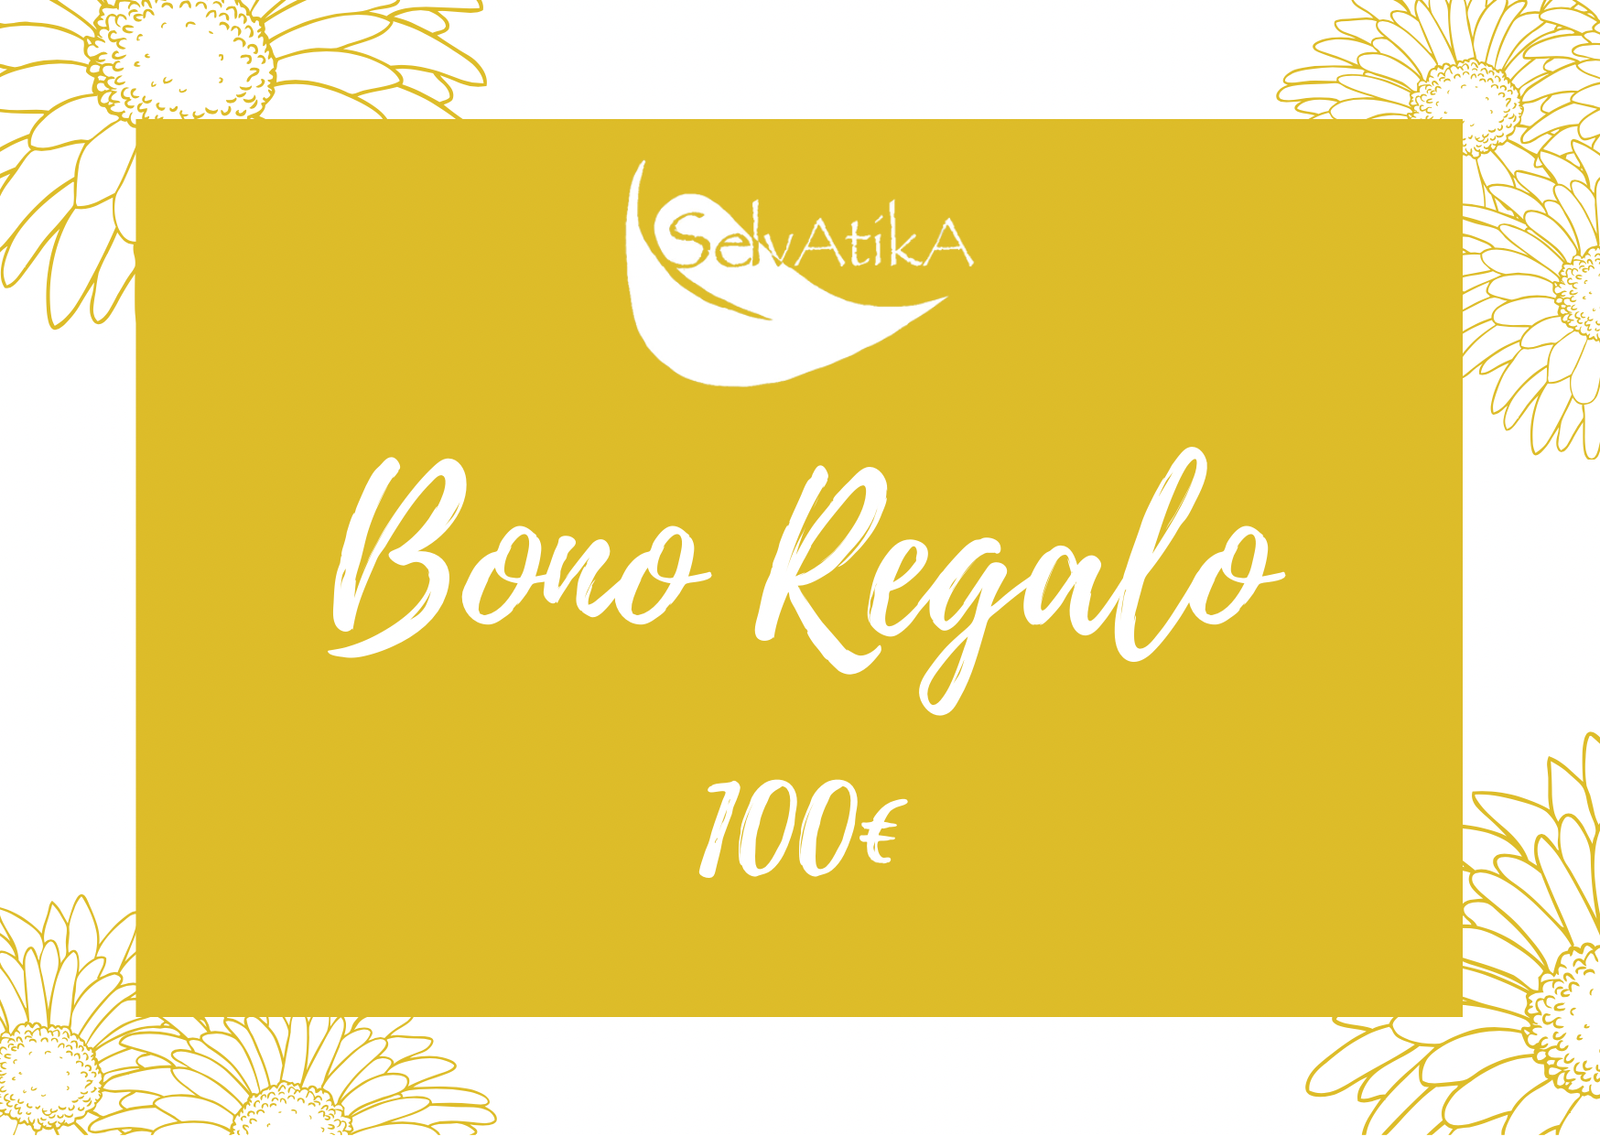 Bono de Regalo 100€ - Selvatika